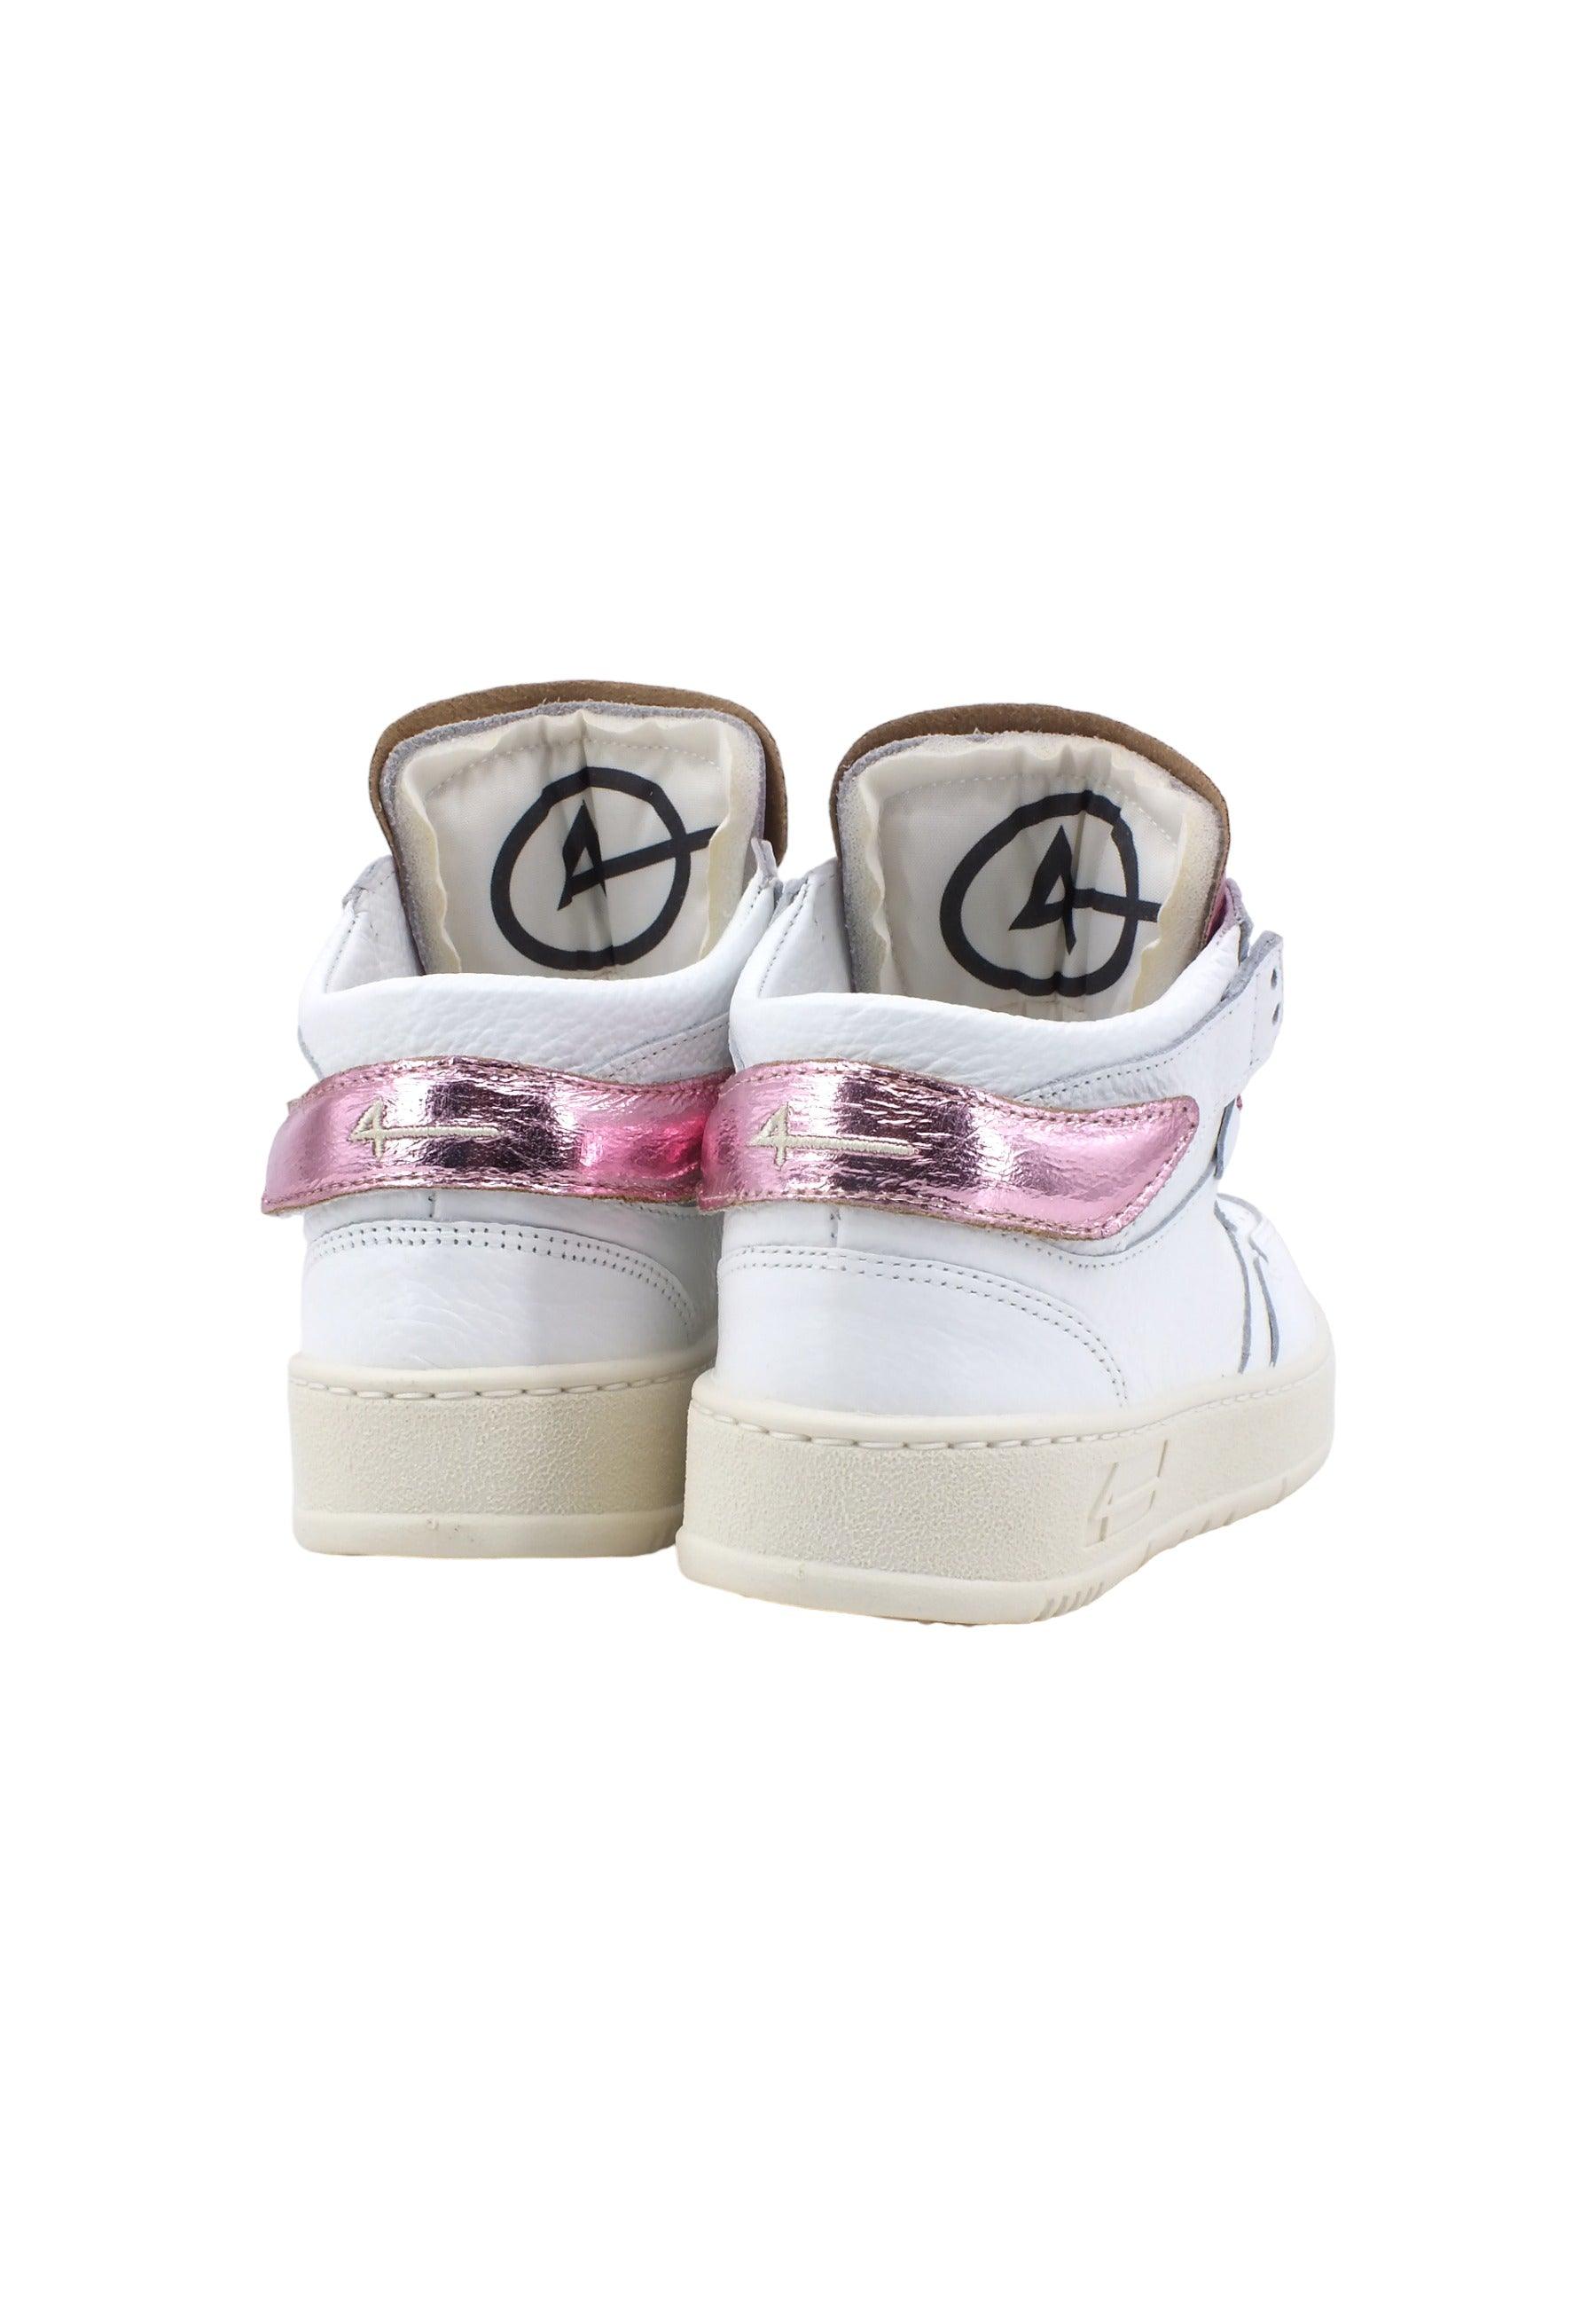 FOURLINE Sneaker Mid Max Donna Bianco Lamè Rosa X109 - Sandrini Calzature e Abbigliamento